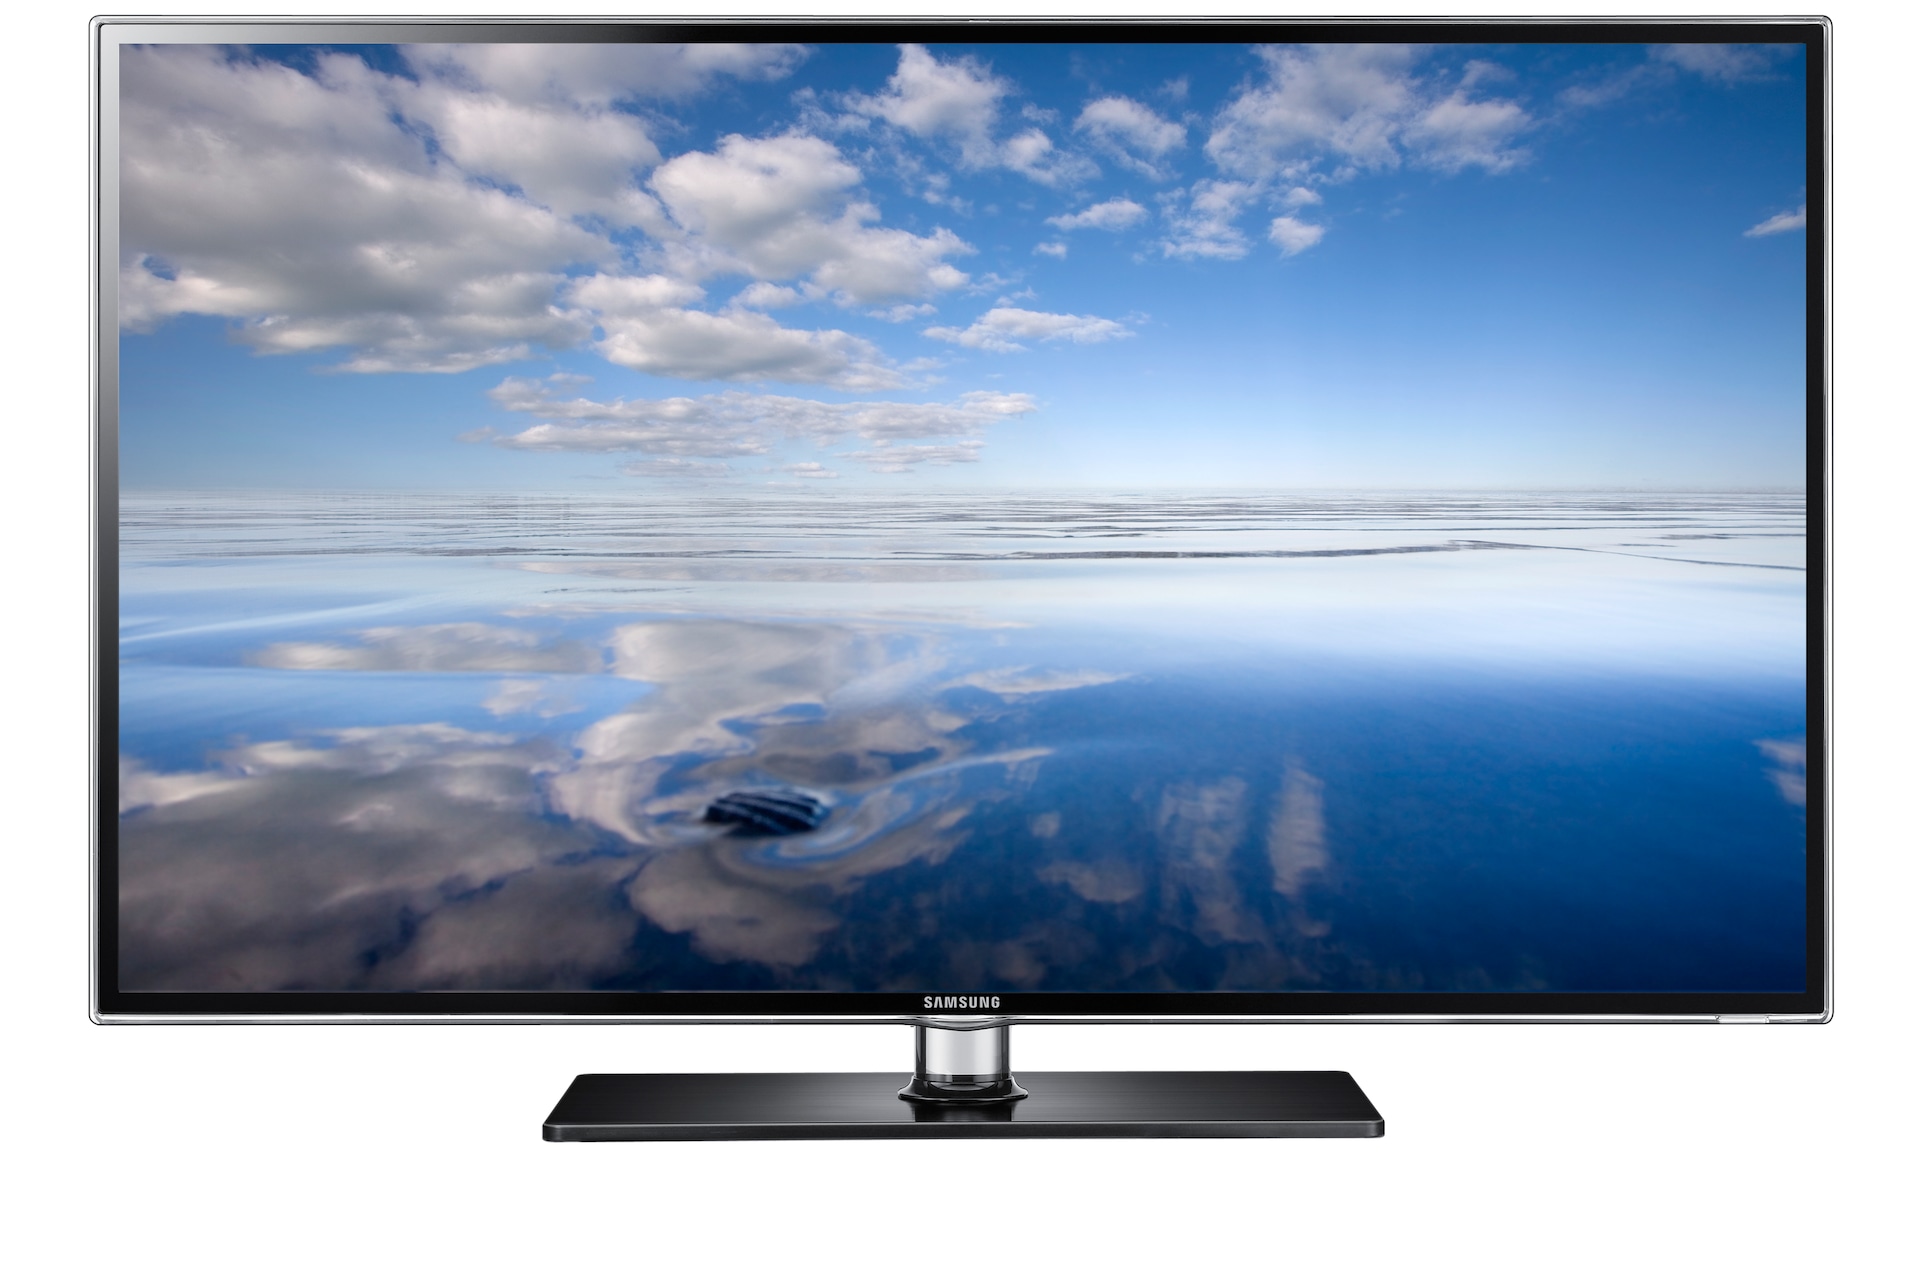 46 U0026quot  6900 Series Smart 3d Full Hd 1080p Led Tv